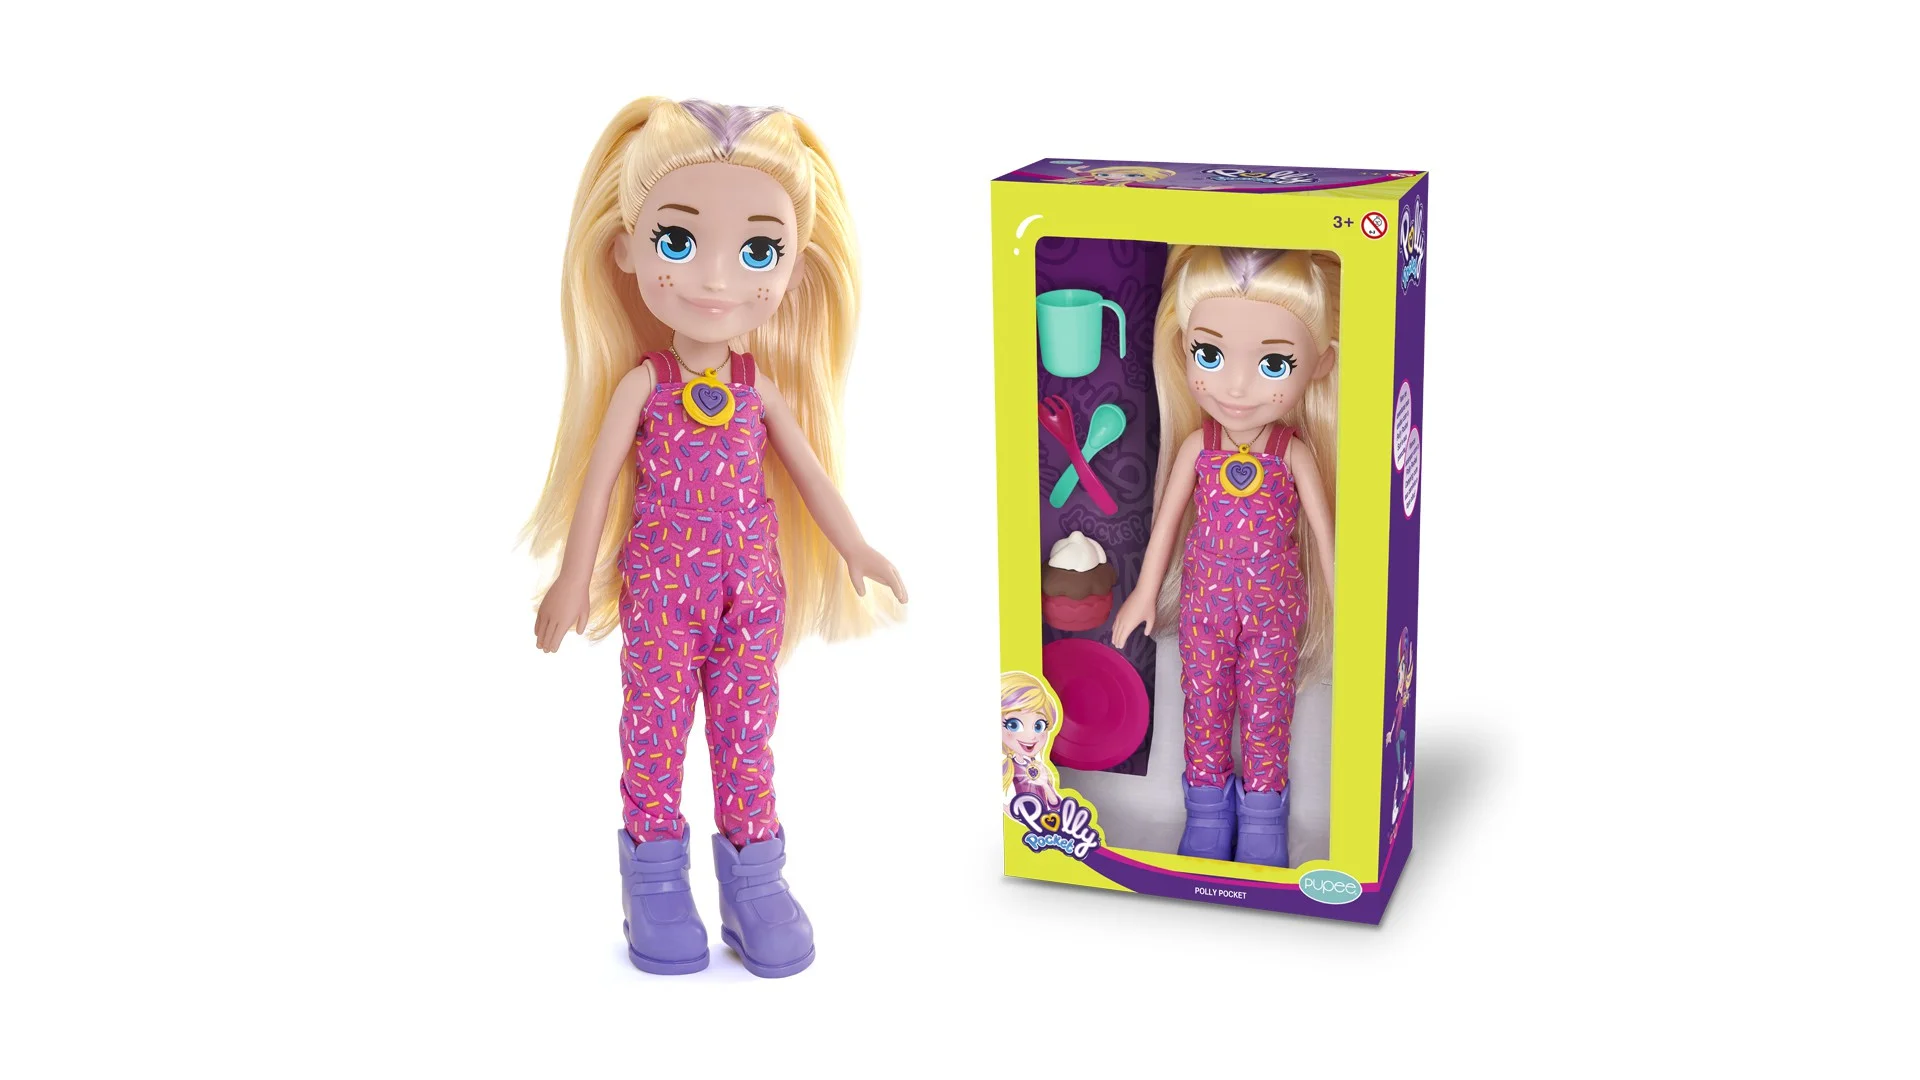 Boneca Polly Picnic - Polly Pocket™ - Mattel™ - Pupee - Casa do Brinquedo ®  Melhores Preços e Entrega Rápida